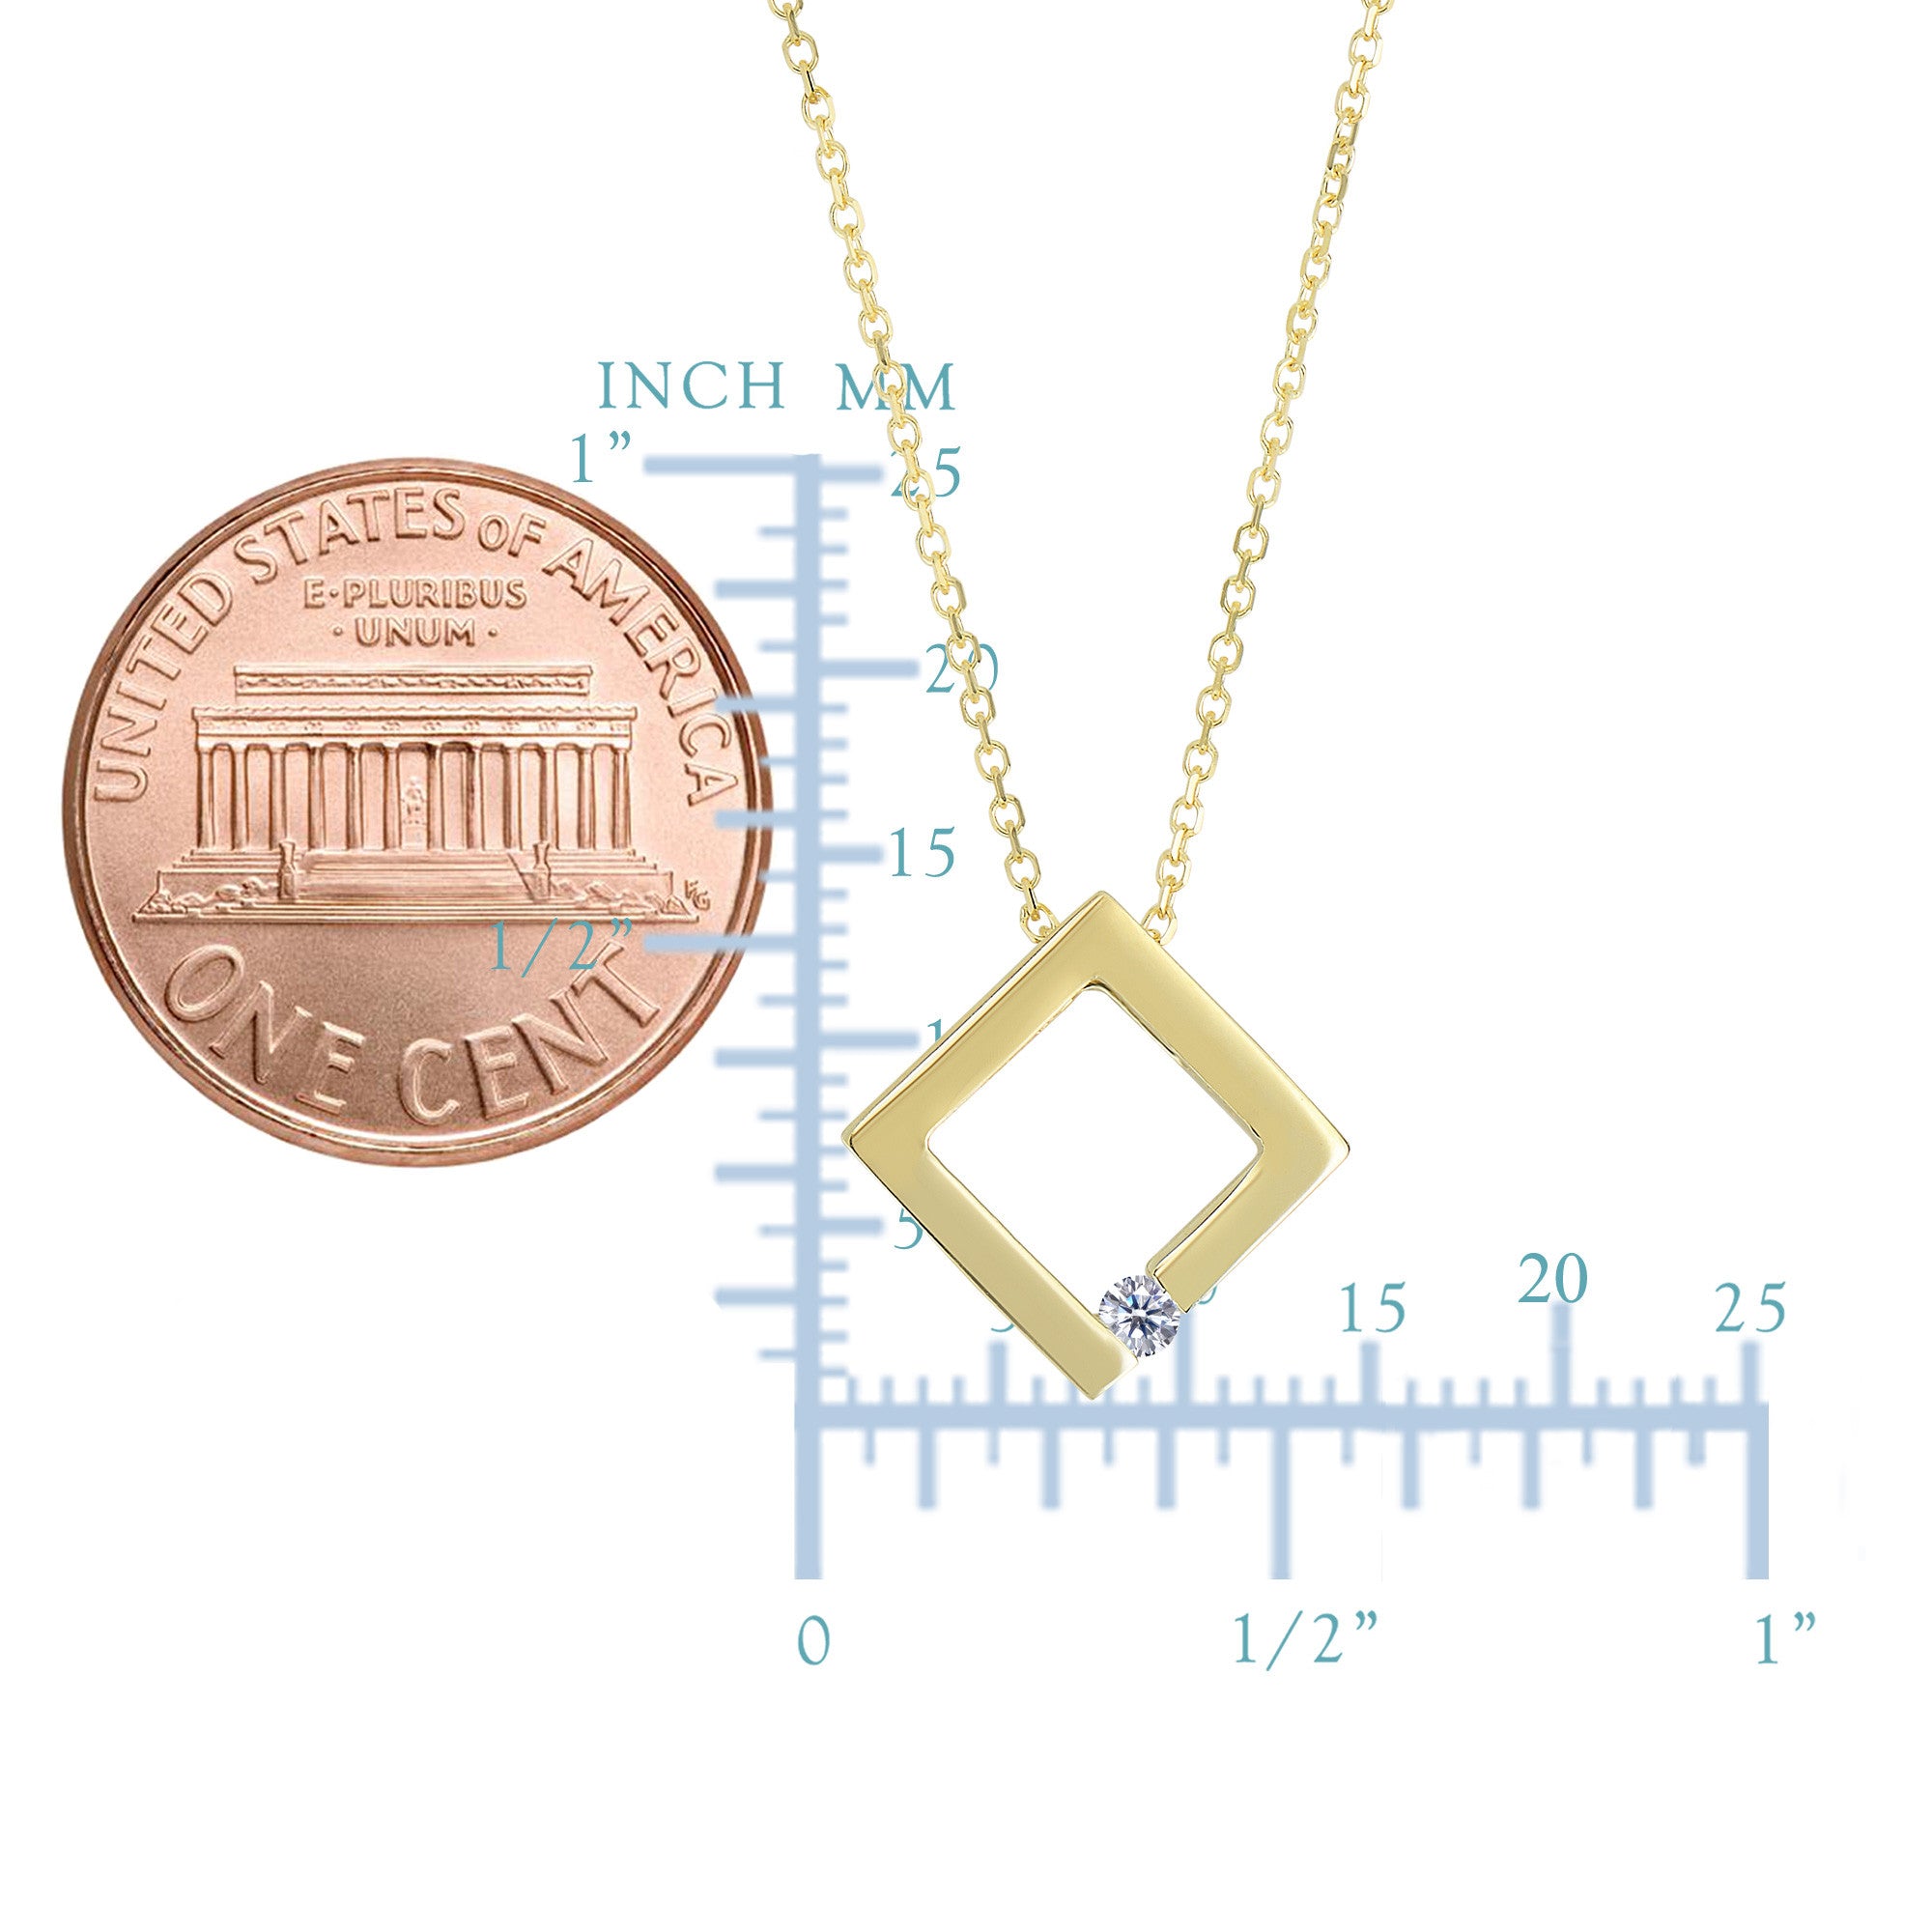 14 k gul guld 0,03 ct diamant halskæde med åben cirkel - 18 tommer fine designer smykker til mænd og kvinder